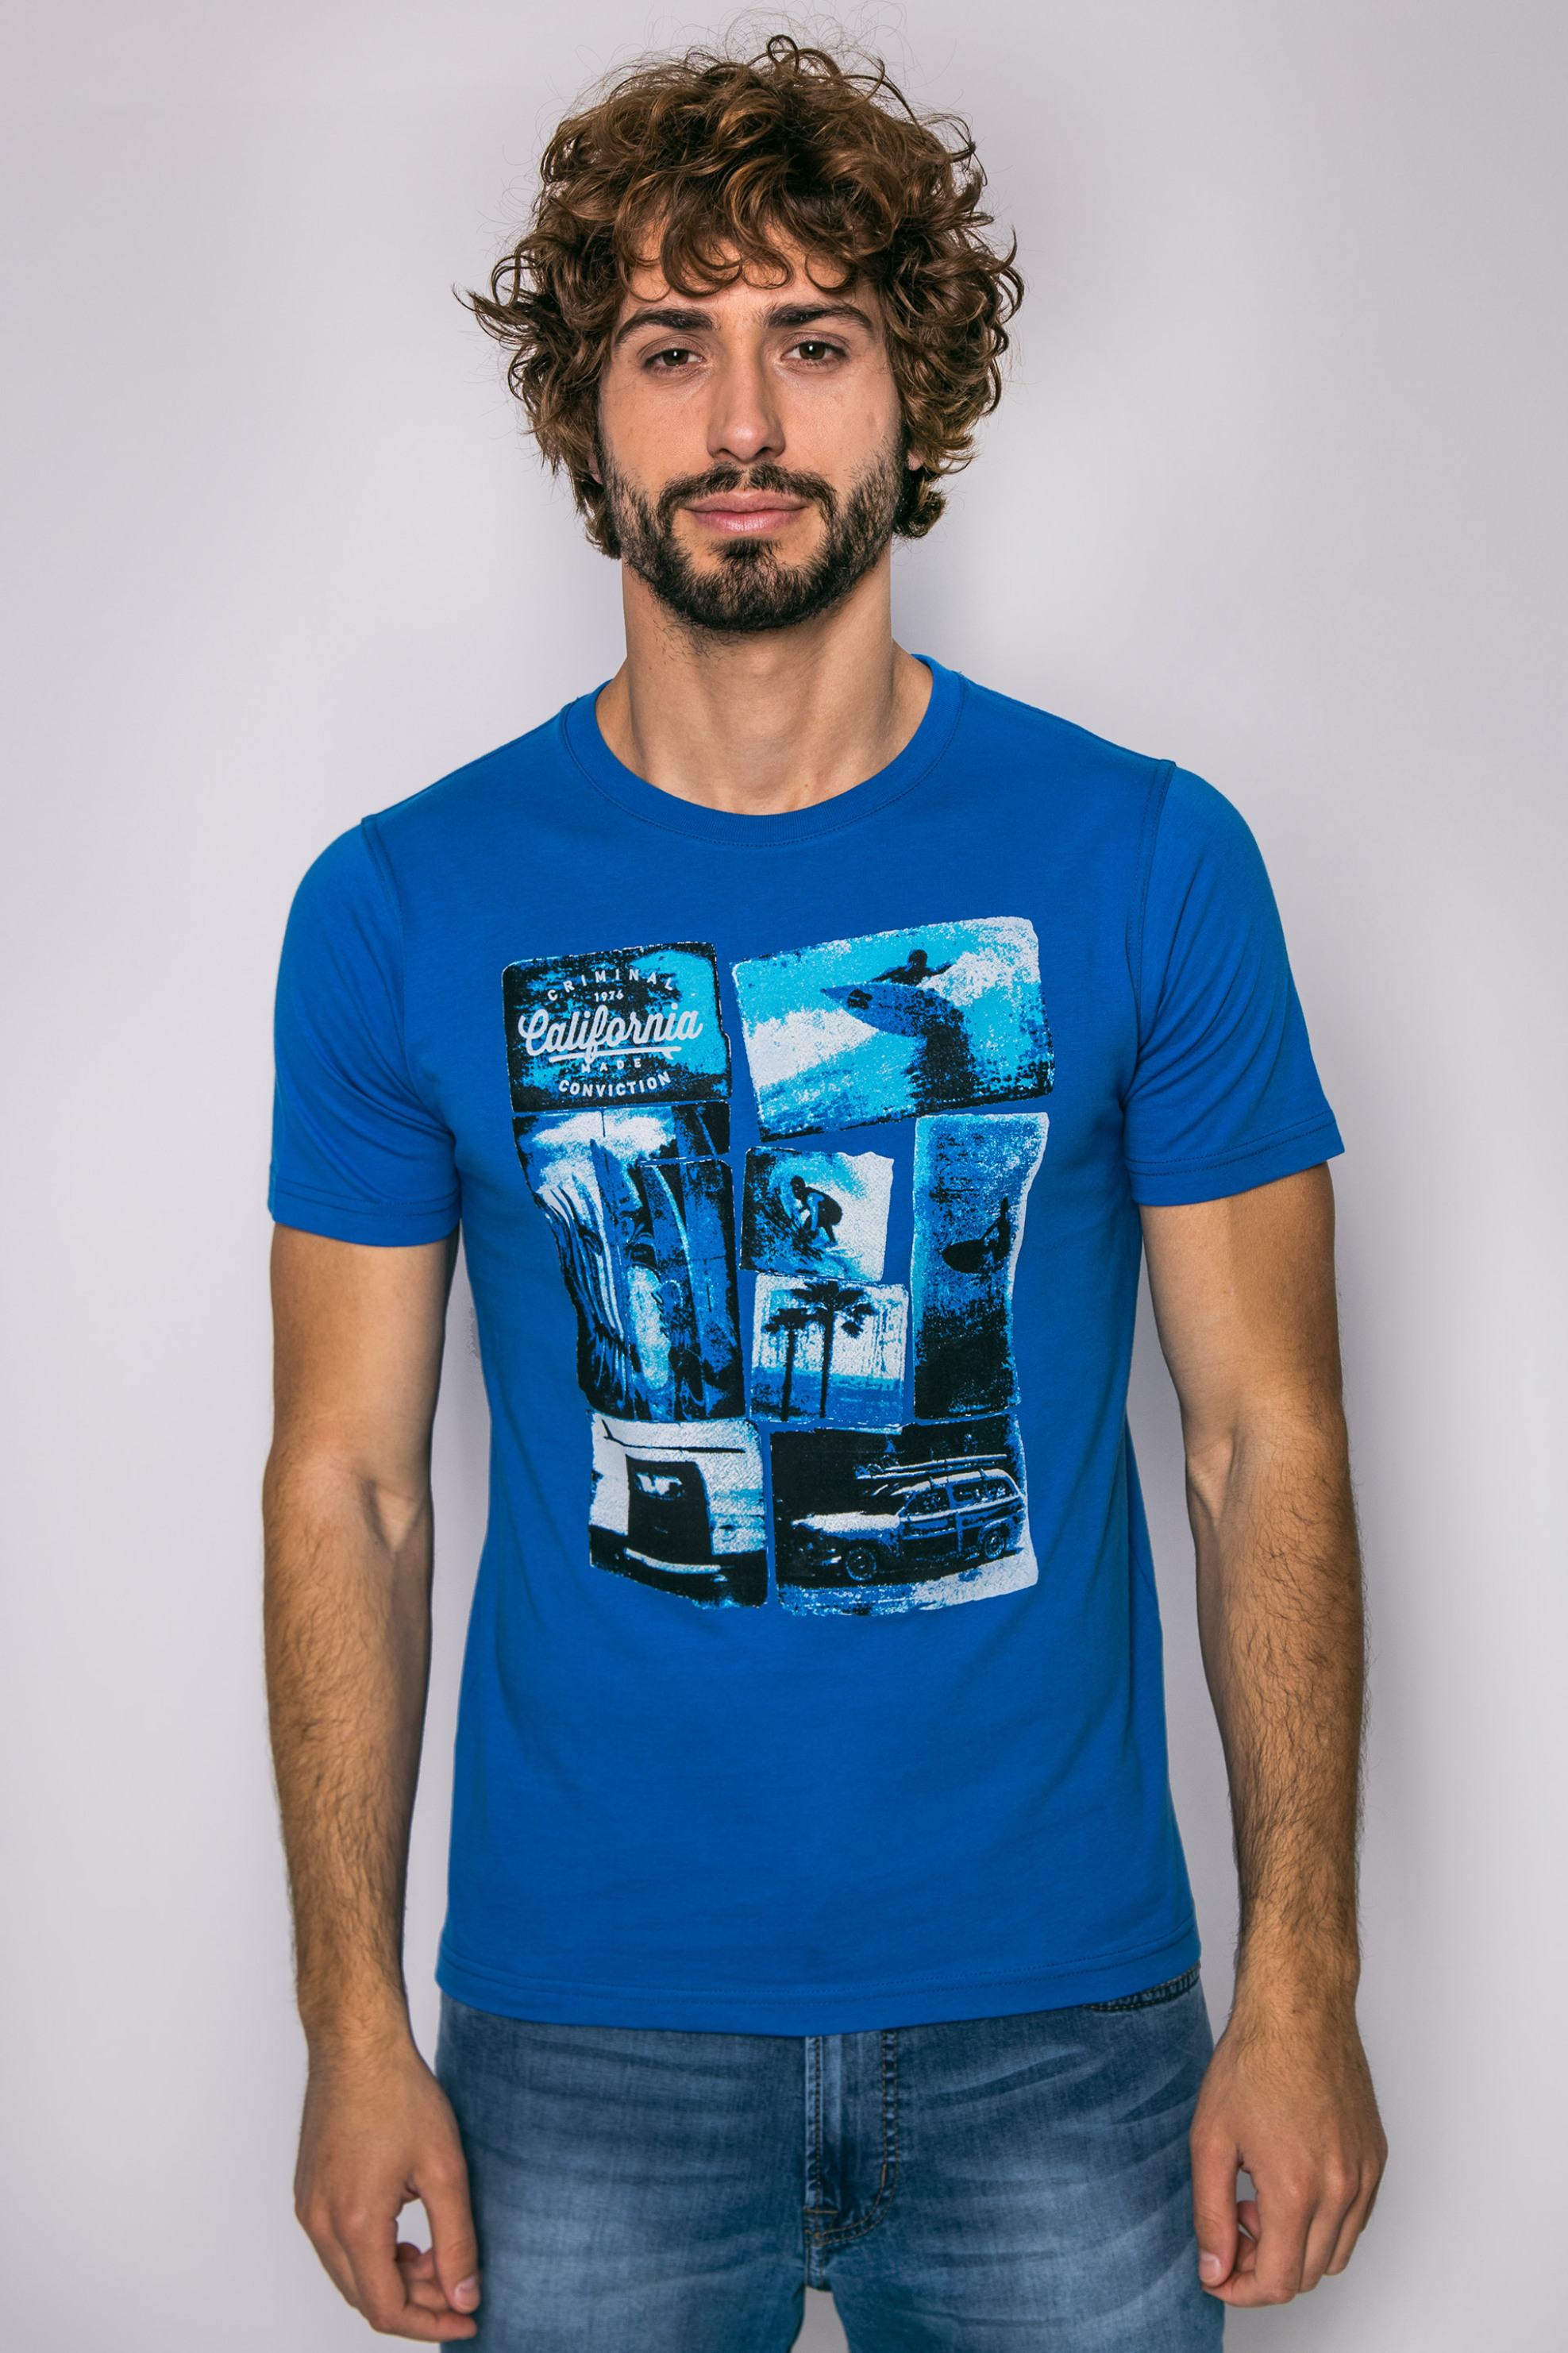 Άνδρας > ΡΟΥΧΑ > Μπλούζες > T-Shirts Ανδρικό T-shirt, The Bostonians - TS1215 Γαλάζιο